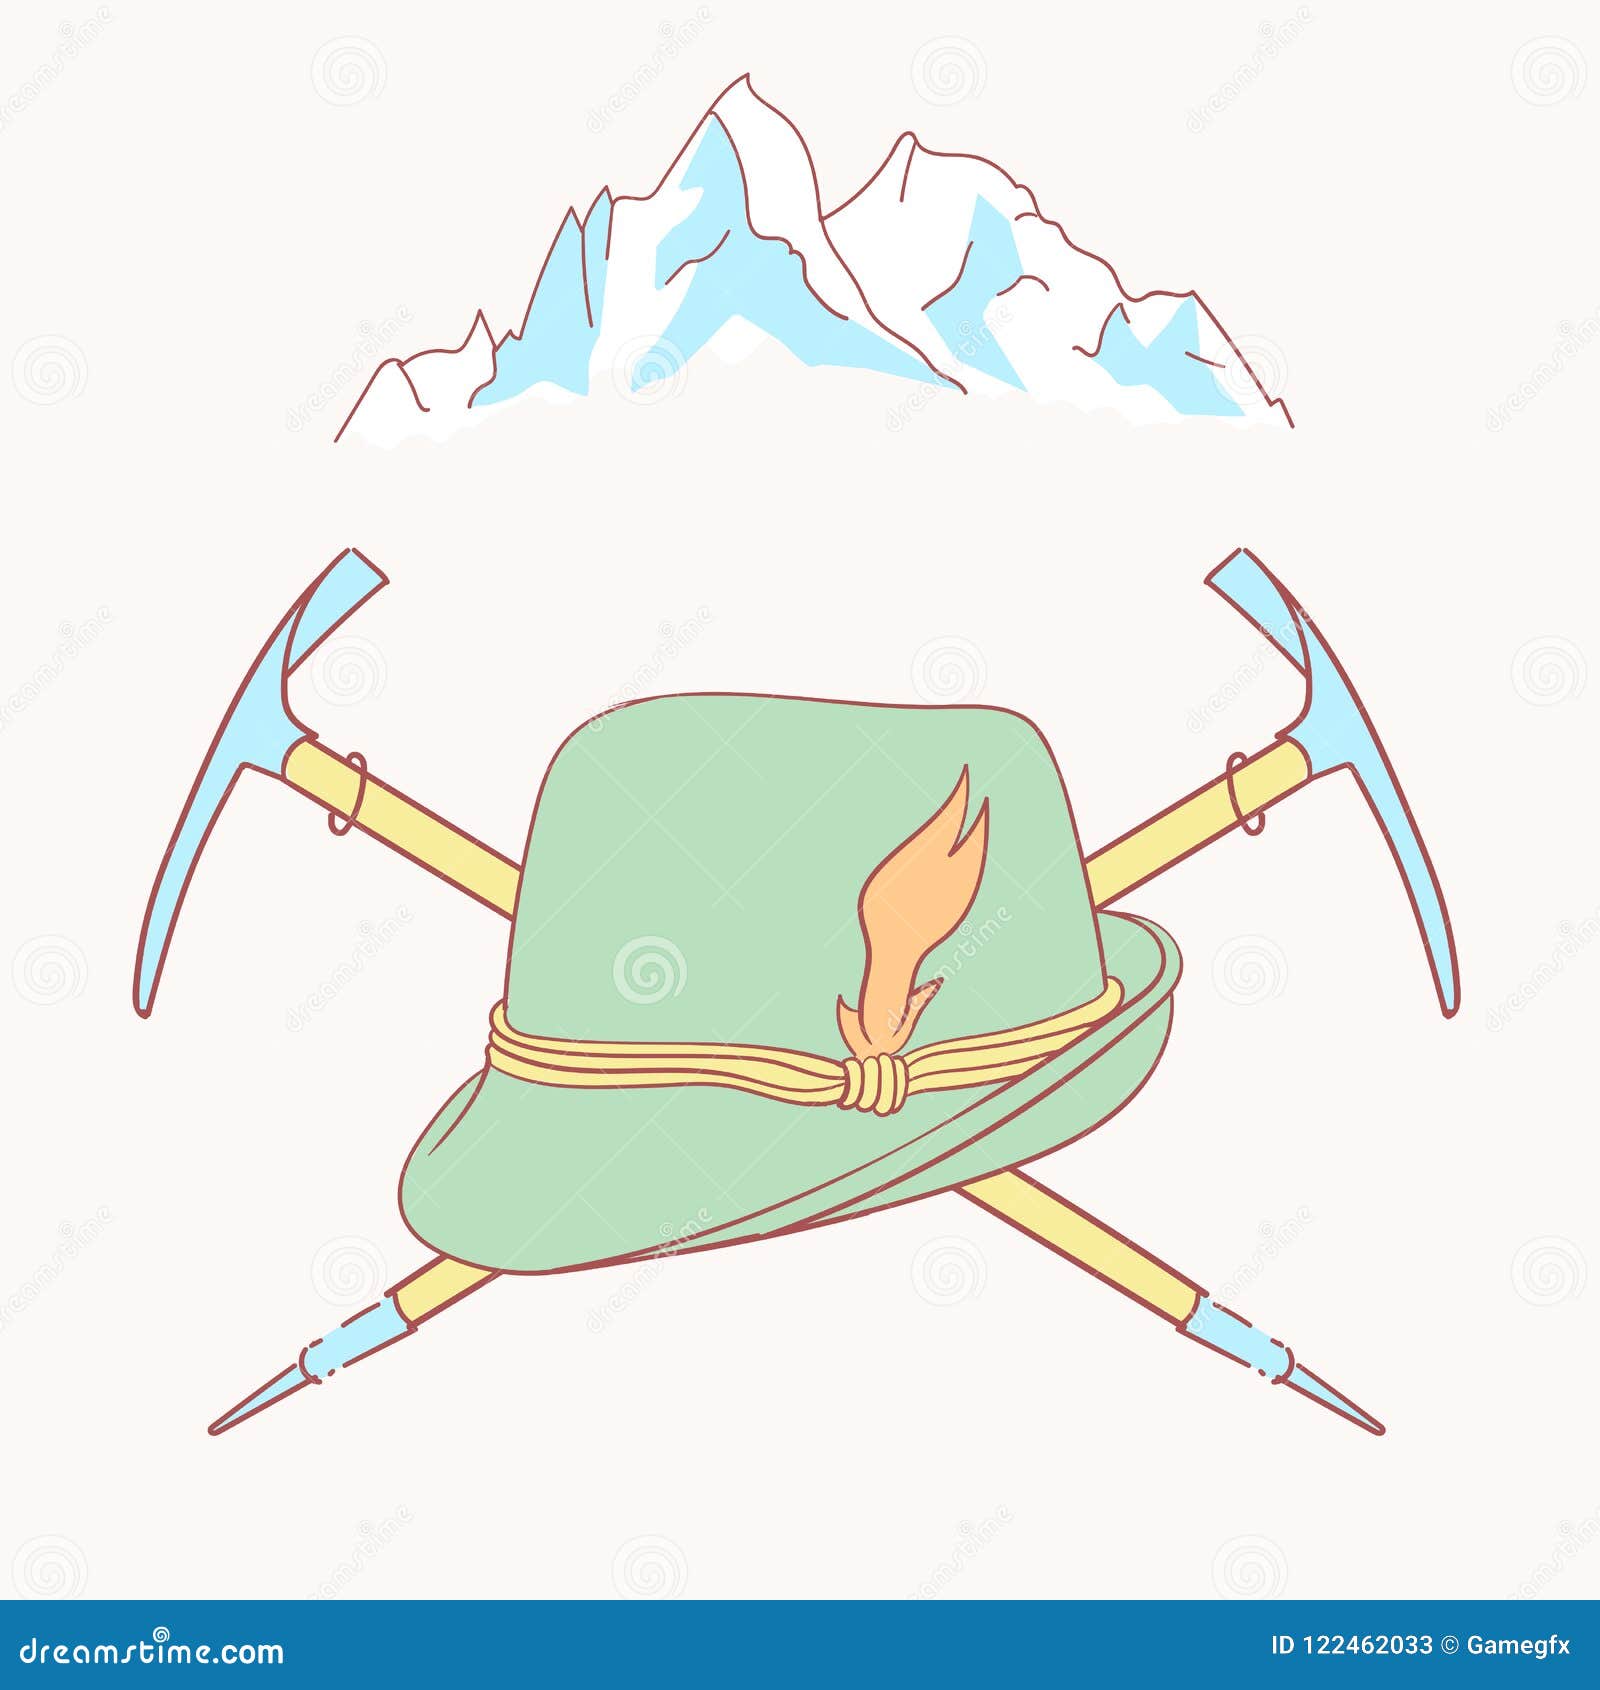 tyrolean hat alpenstock flower  alpinism alps germany logo